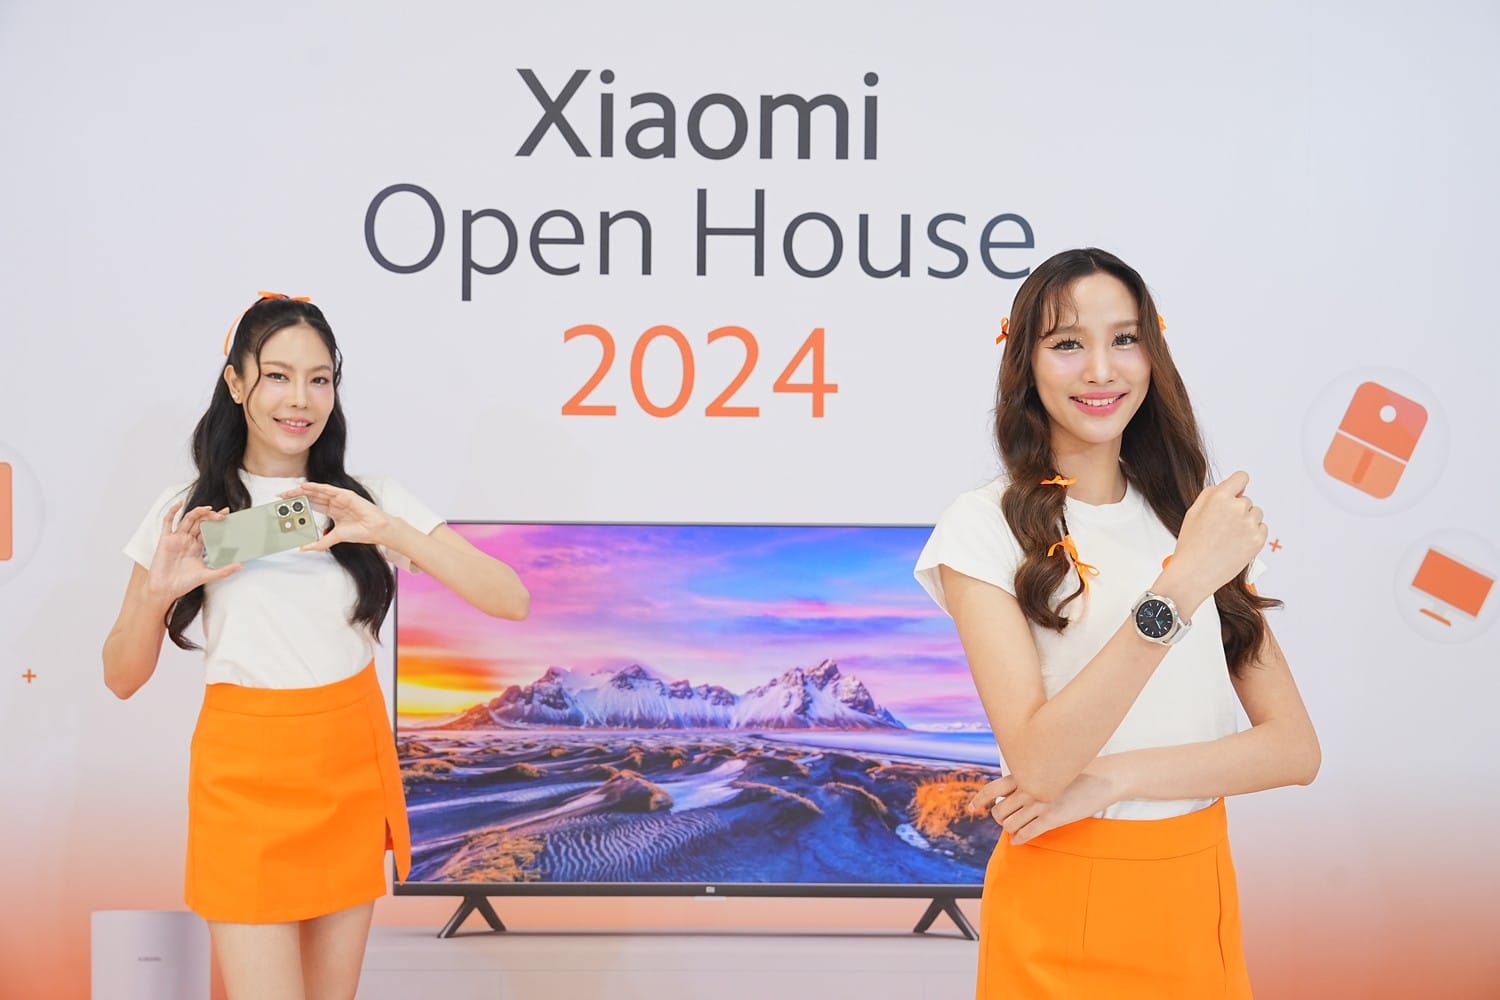  ‘Xiaomi Open House 2024’ เปิดบ้านเสียวหมี่แนะนำสินค้าที่เดอะมอลล์บางกะปิ วันที่ 22-23 มิถุนายนนี้ 3